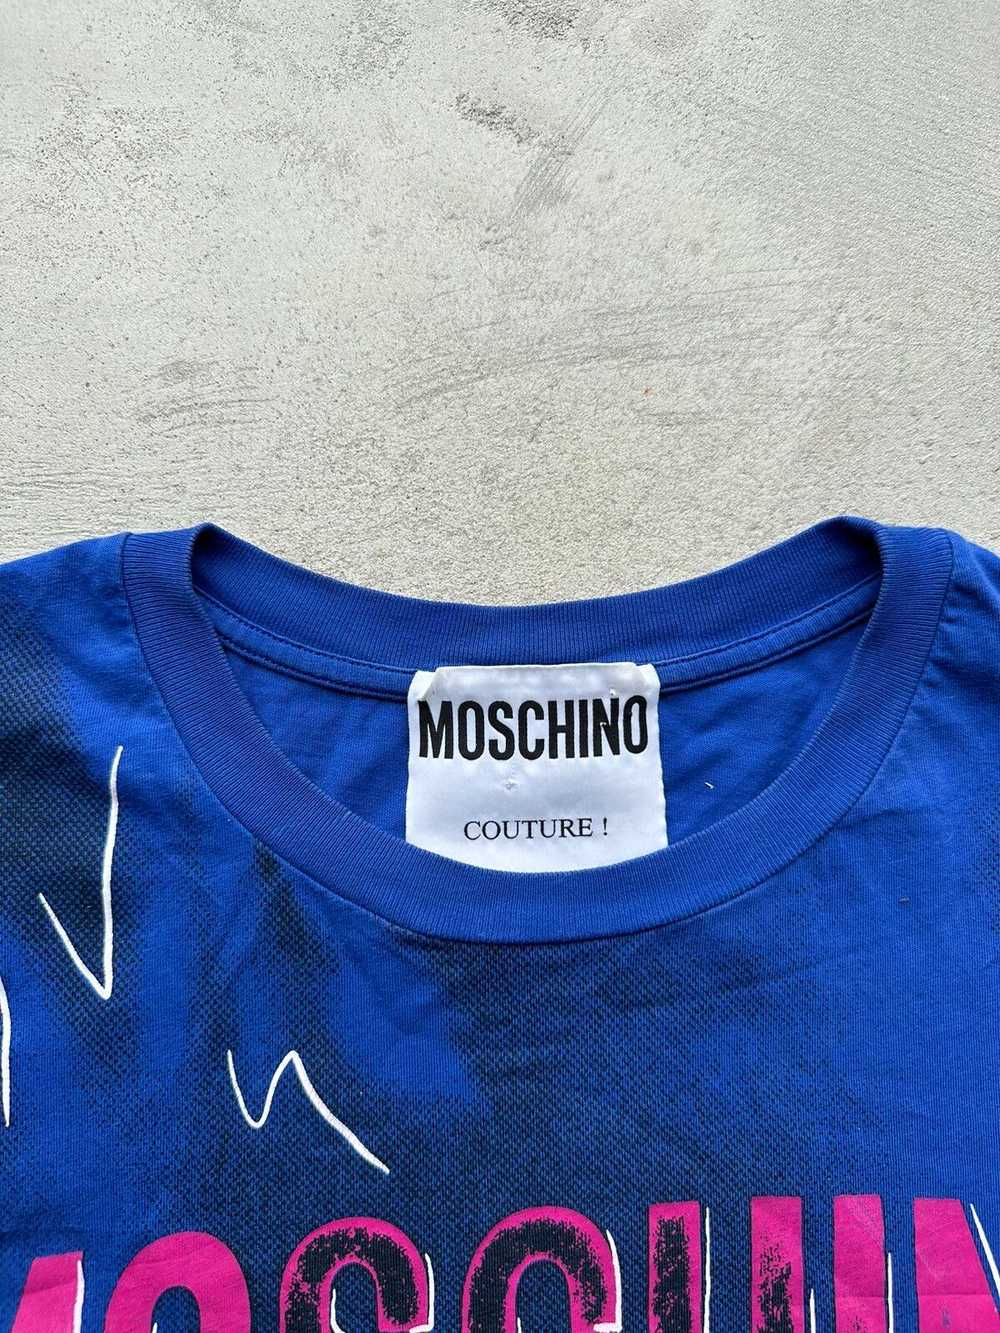 Jeremy Scott × Moschino Moschino Couture Tshirt - image 4